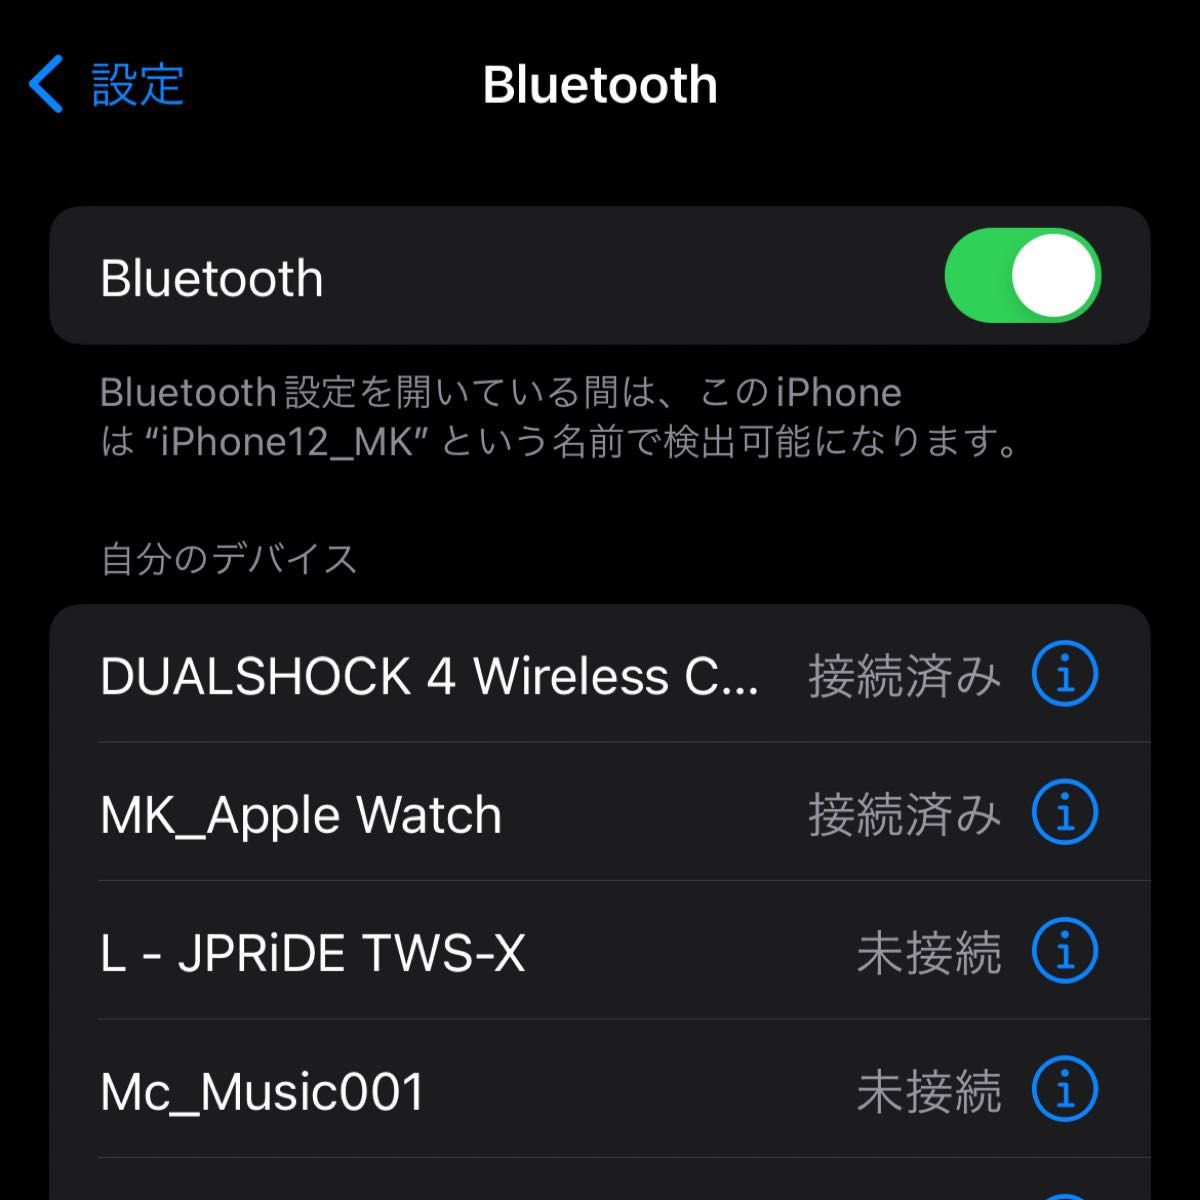 超美品 ワイヤレスコントローラー Bluetooth Android Windows PC PUBG/COD/原神 PS4 32 